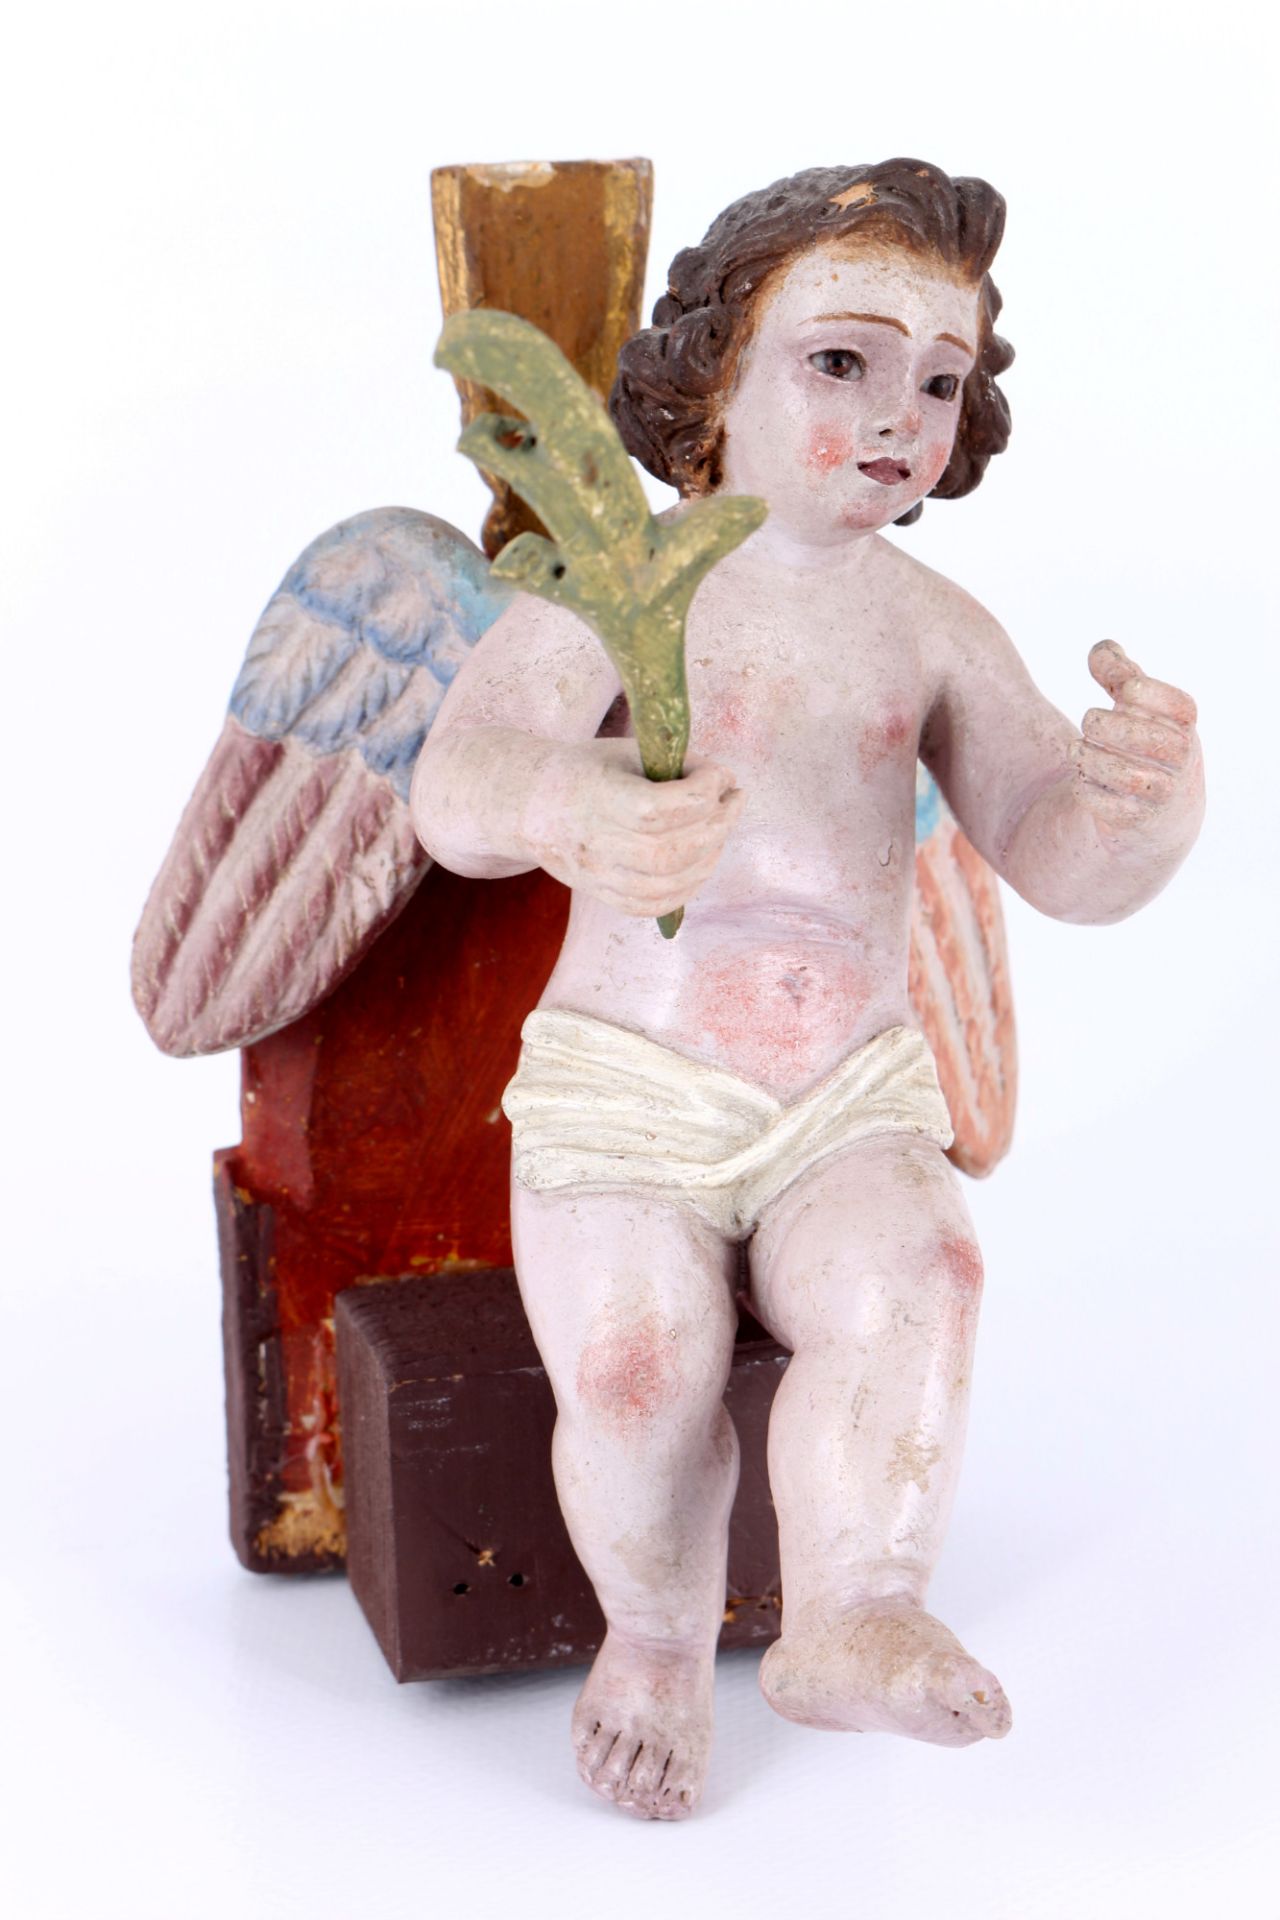 2 Putten Engel Skulpturen 18./19. Jahrhundert, cherub sculptures 18th century, - Bild 2 aus 6